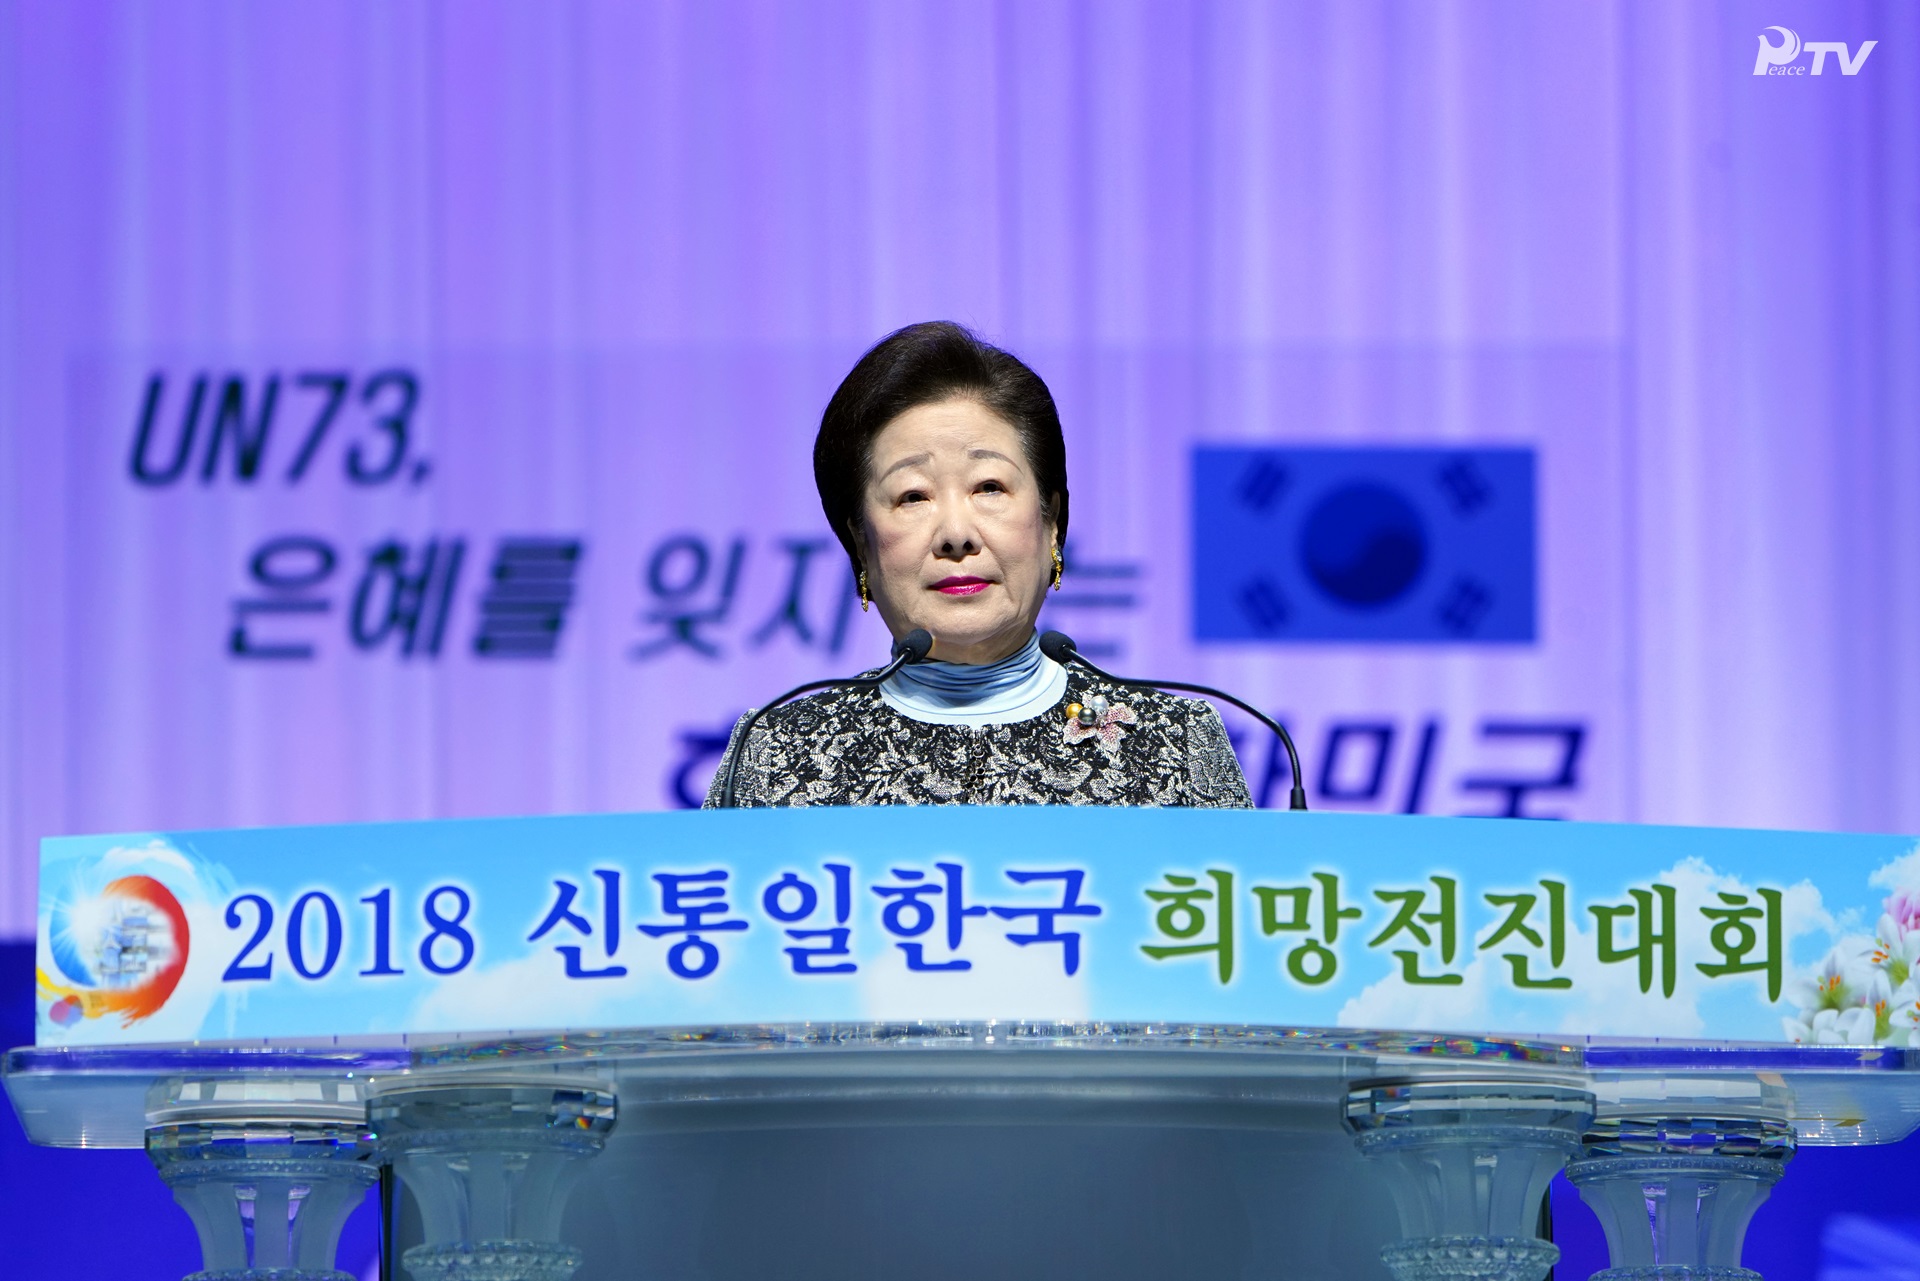 UN73、恩を忘れない 孝情 大韓民国 2018 神統一韓国 希望前進大会(2018.10.28)